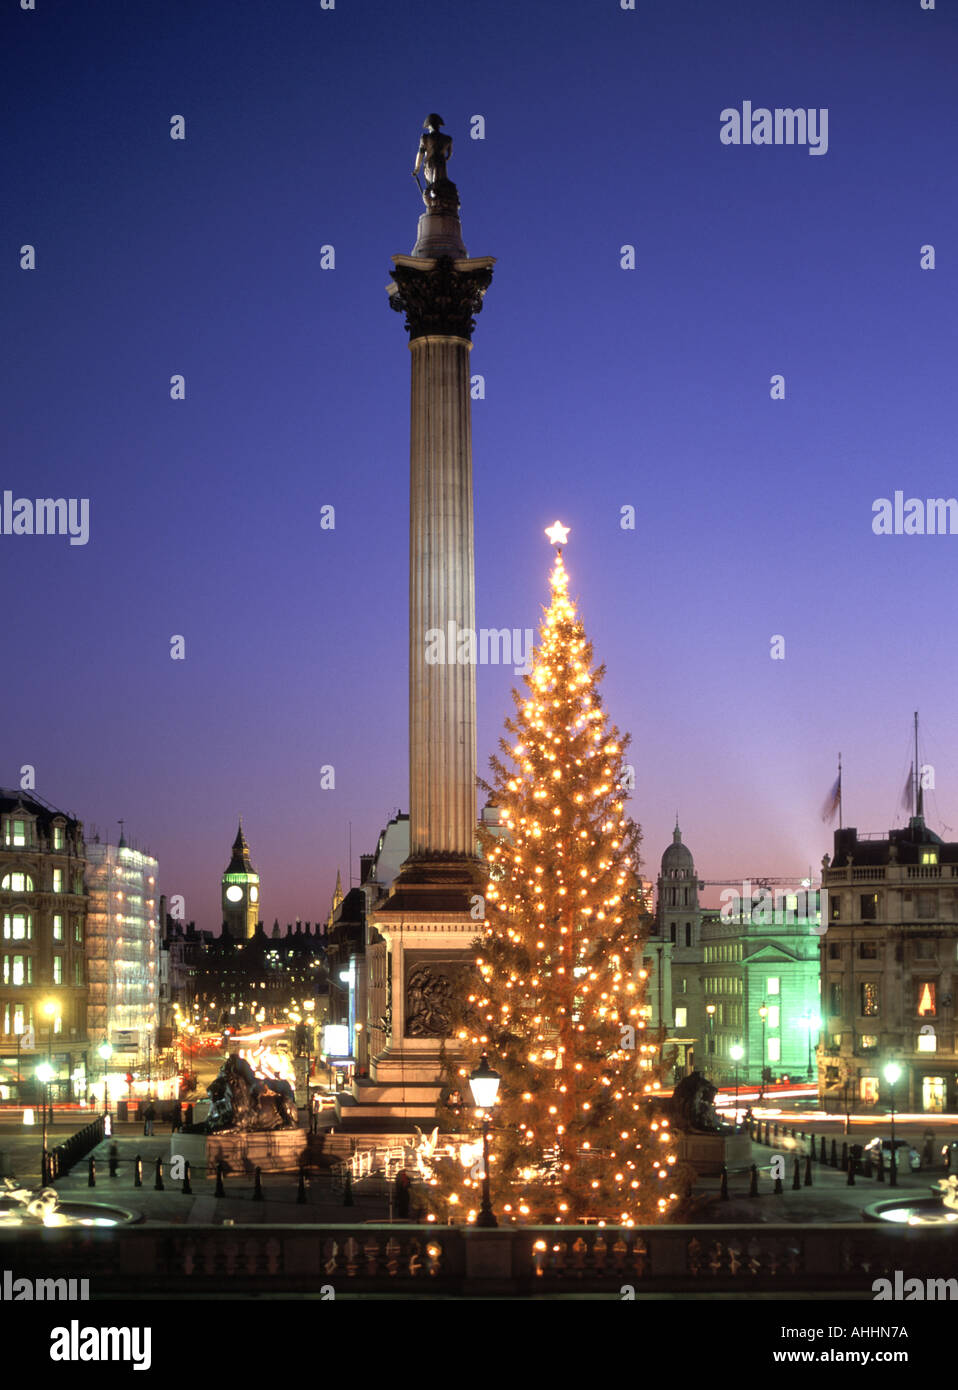 Abendhimmel Trafalgar Square Szene mit Lichtern und Dekorationen auf Weihnachtsbaum Nelsons Säule Big Ben am Ende von Whitehall ikonischen London England UK Stockfoto